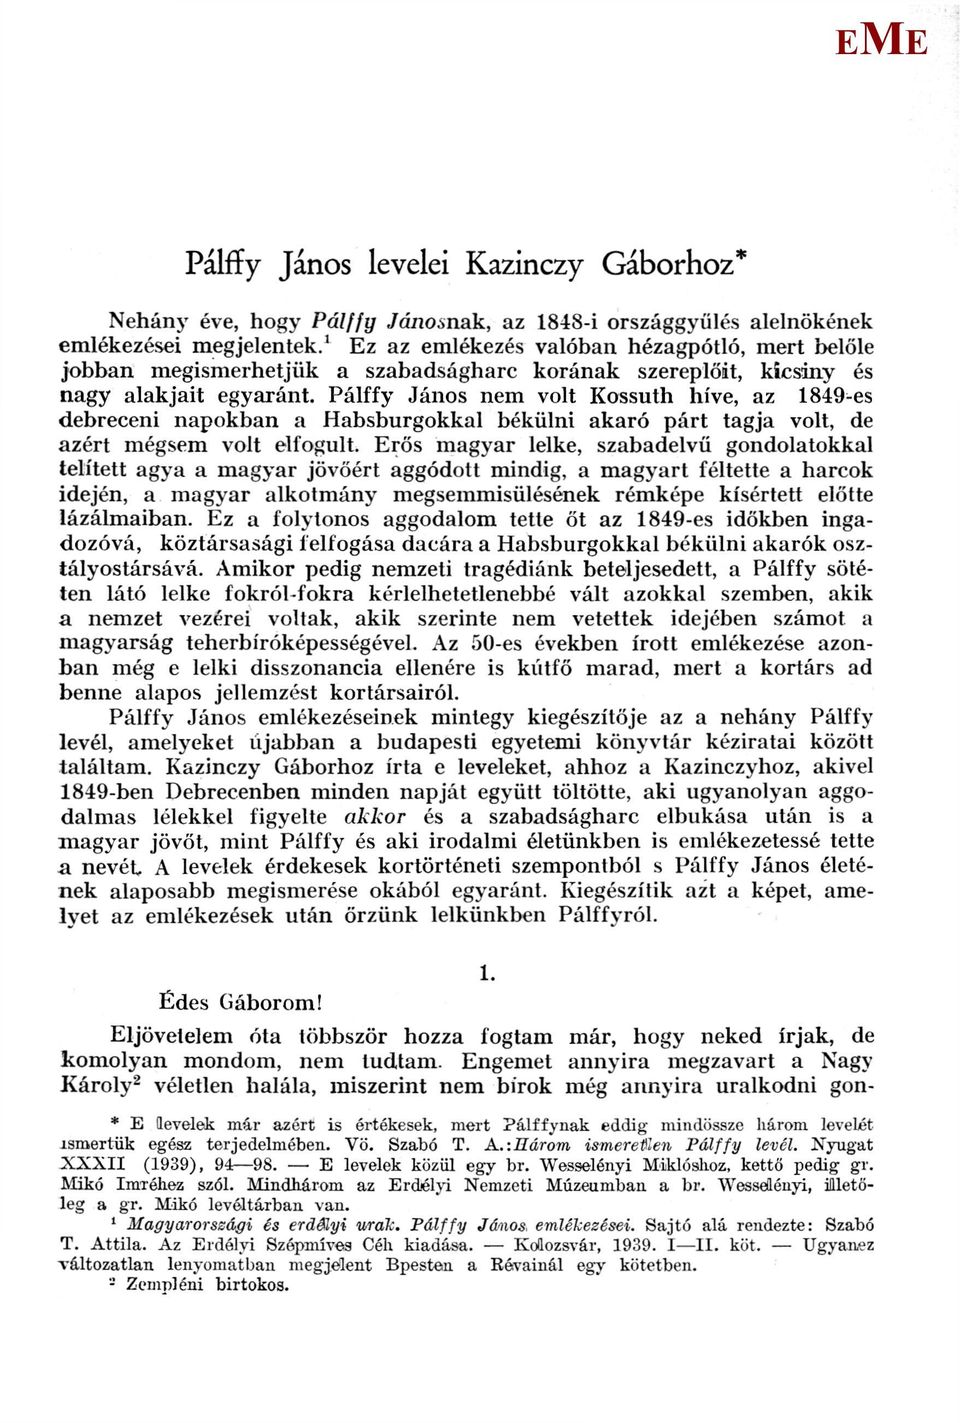 Pálffy János nem volt Kossuth híve, az 1849-es debreceni napokban a Habsburgokkal békülni akaró párt tagja volt, de azért mégsem volt elfogult.